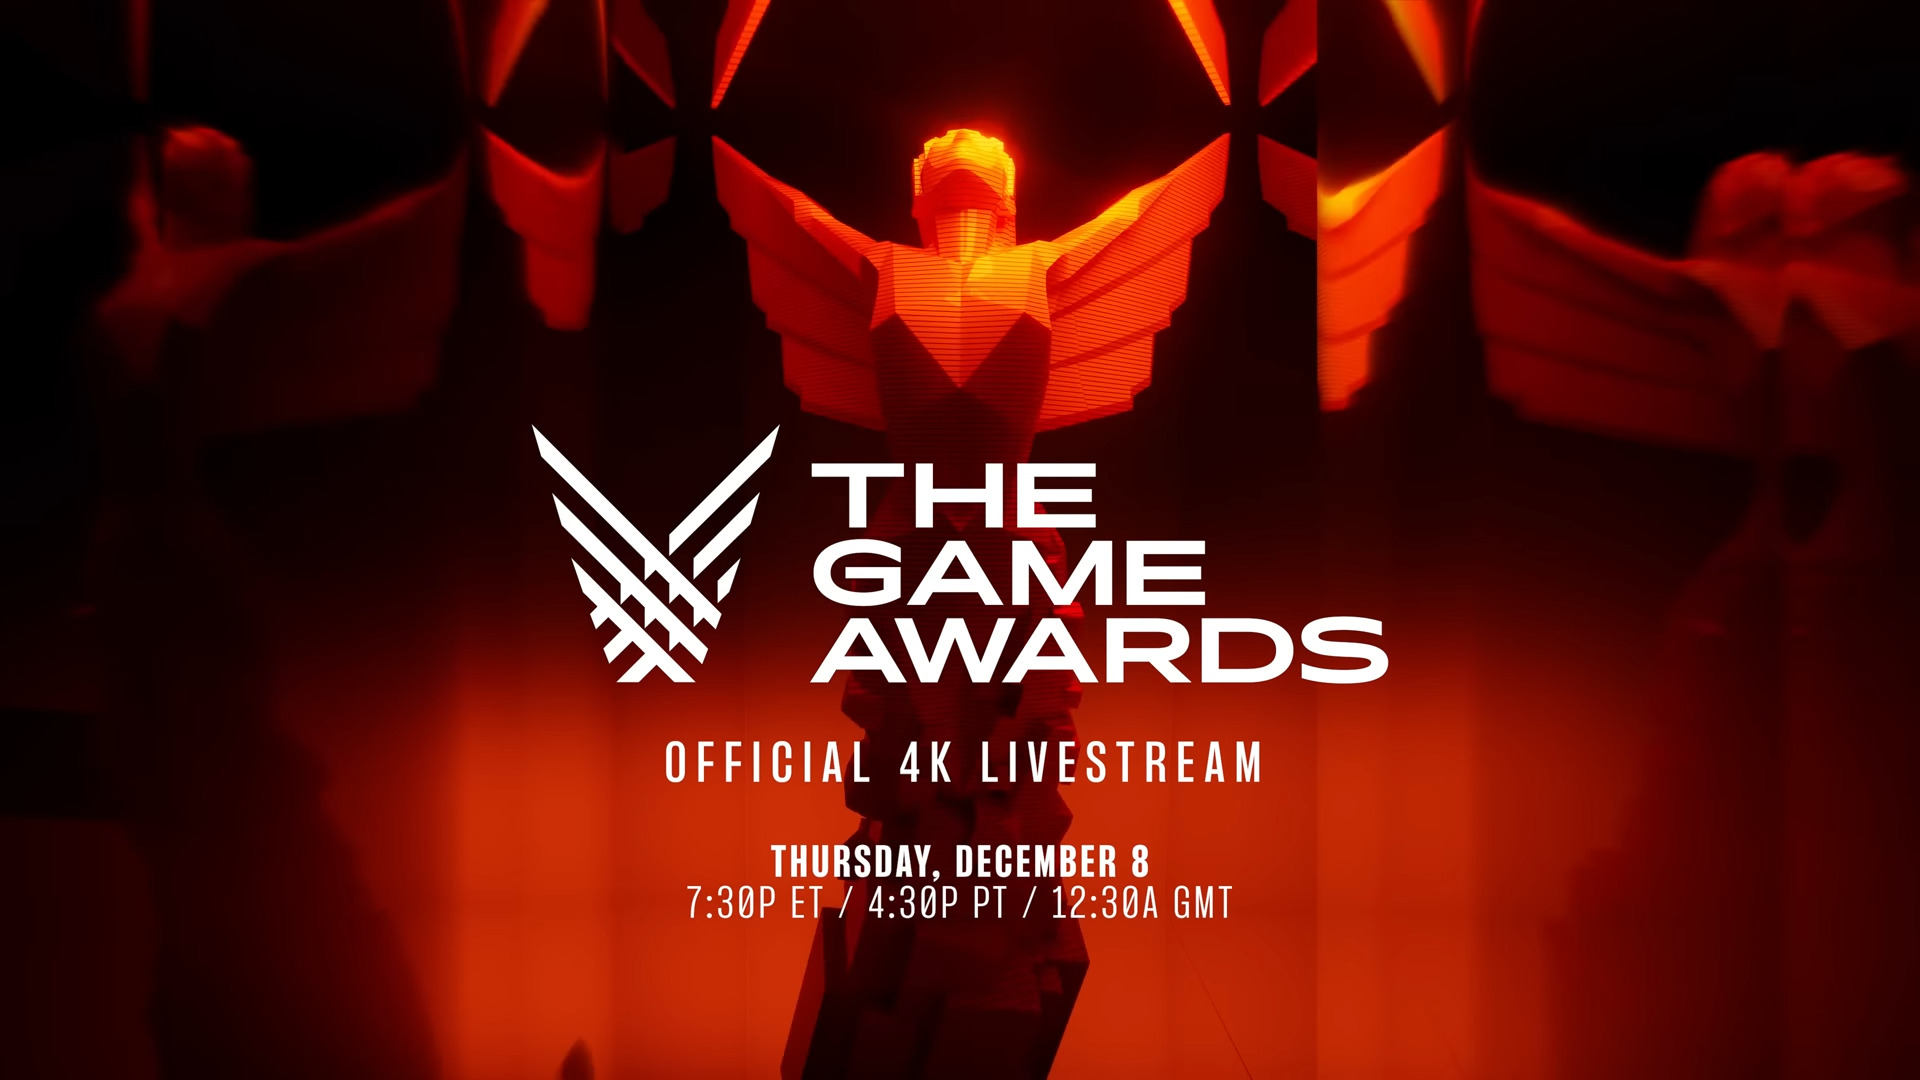 The Game Awards 4K Livestream startet um 0130 Uhr